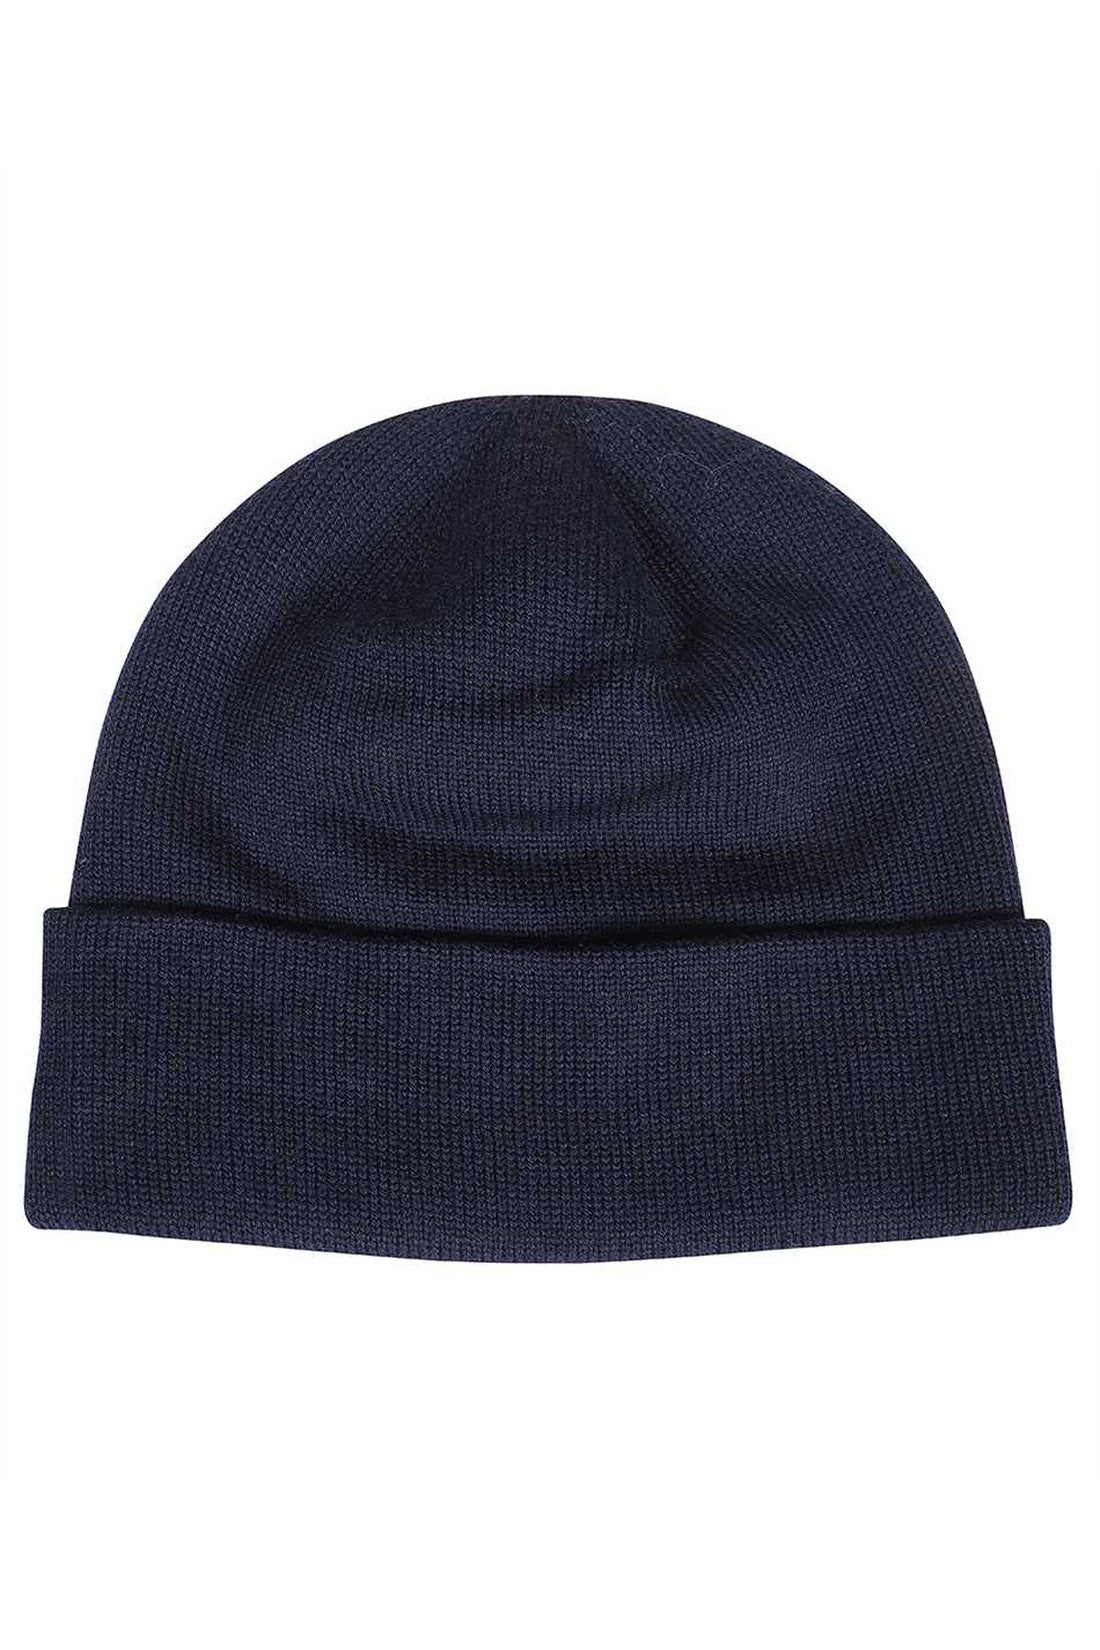 Merino wool hat-Les Deux-OUTLET-SALE-TU-ARCHIVIST